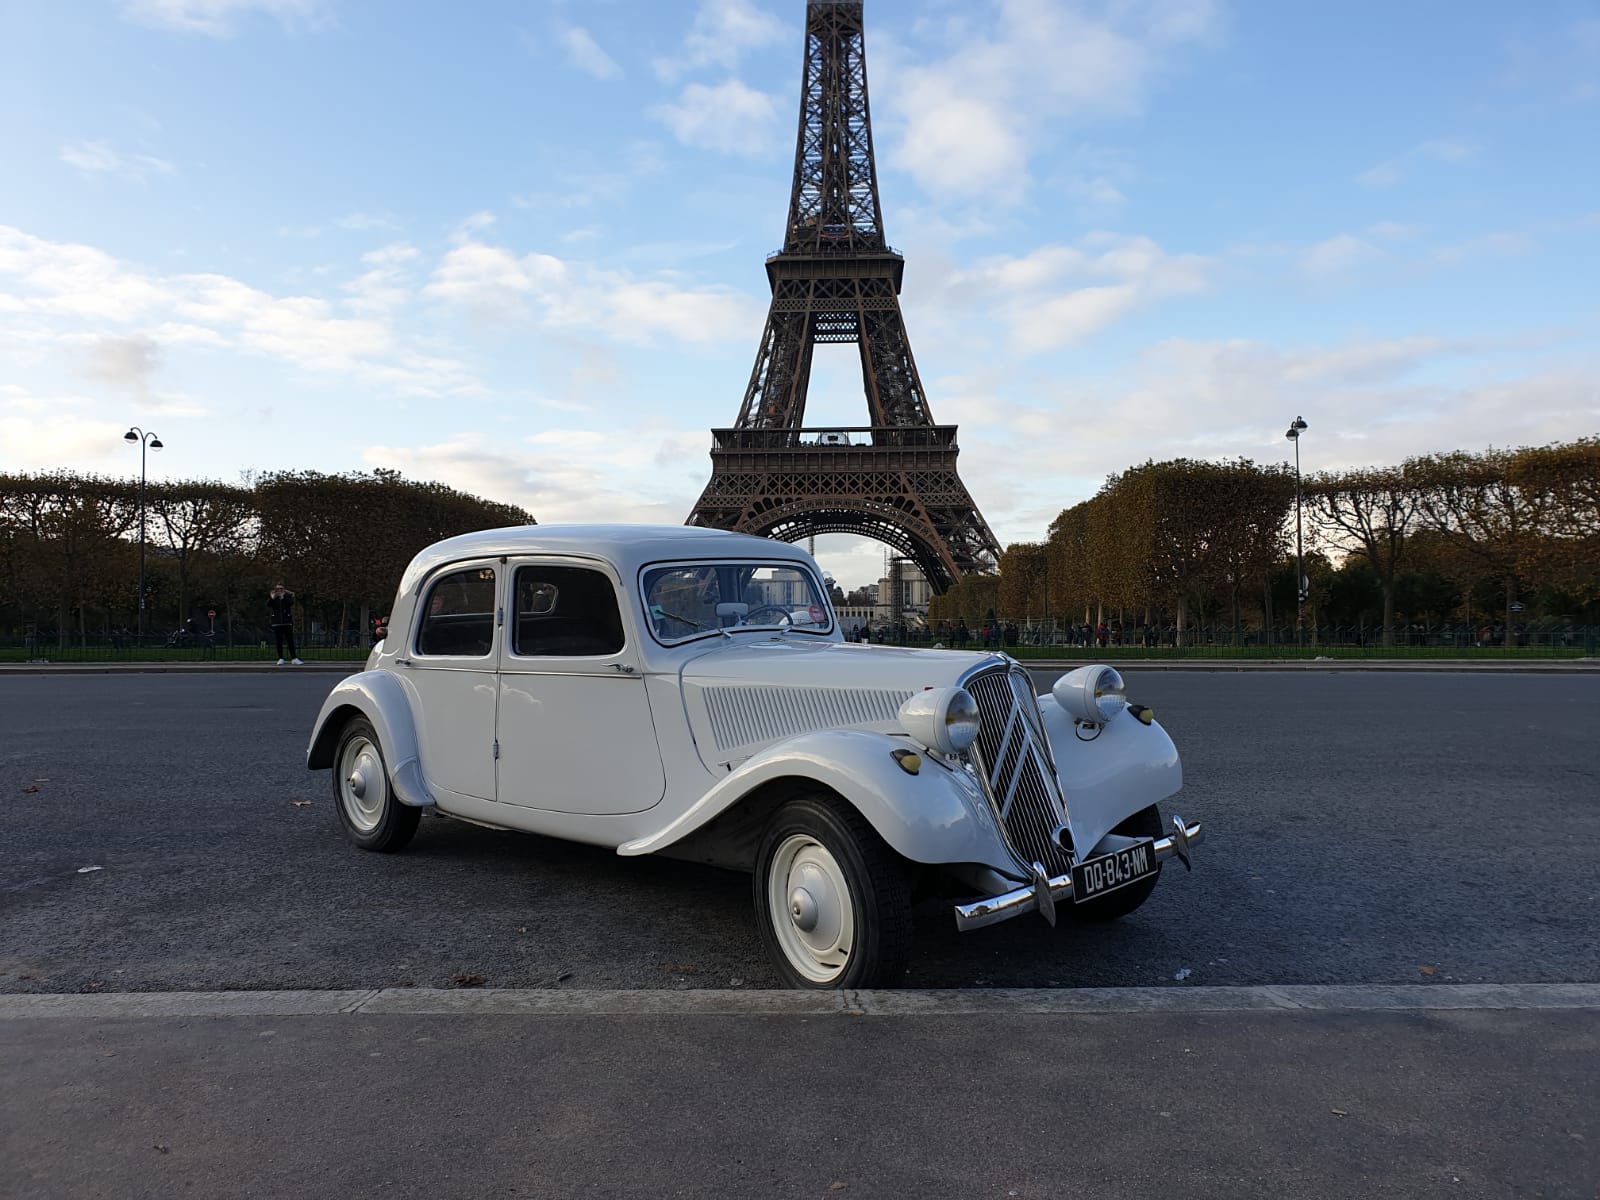 paris tour in vintage car